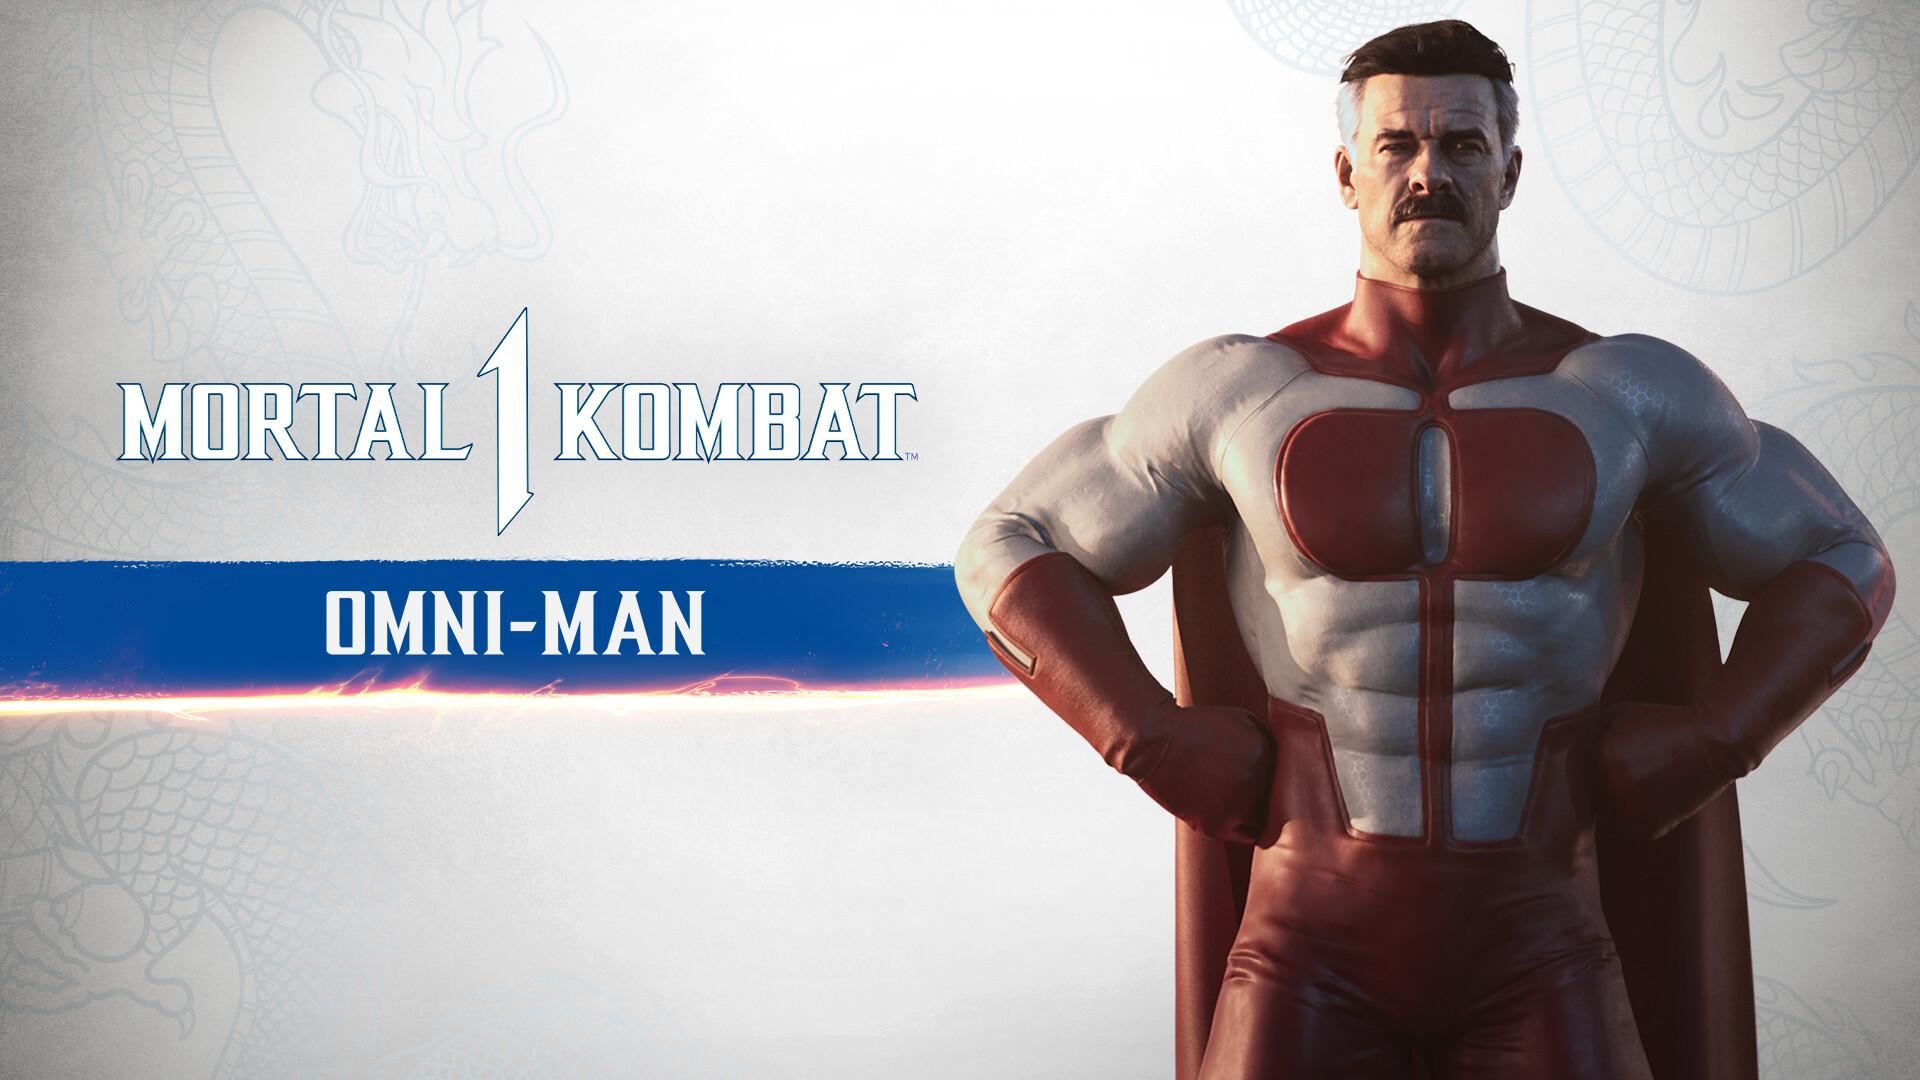 MK1: Omni-Man